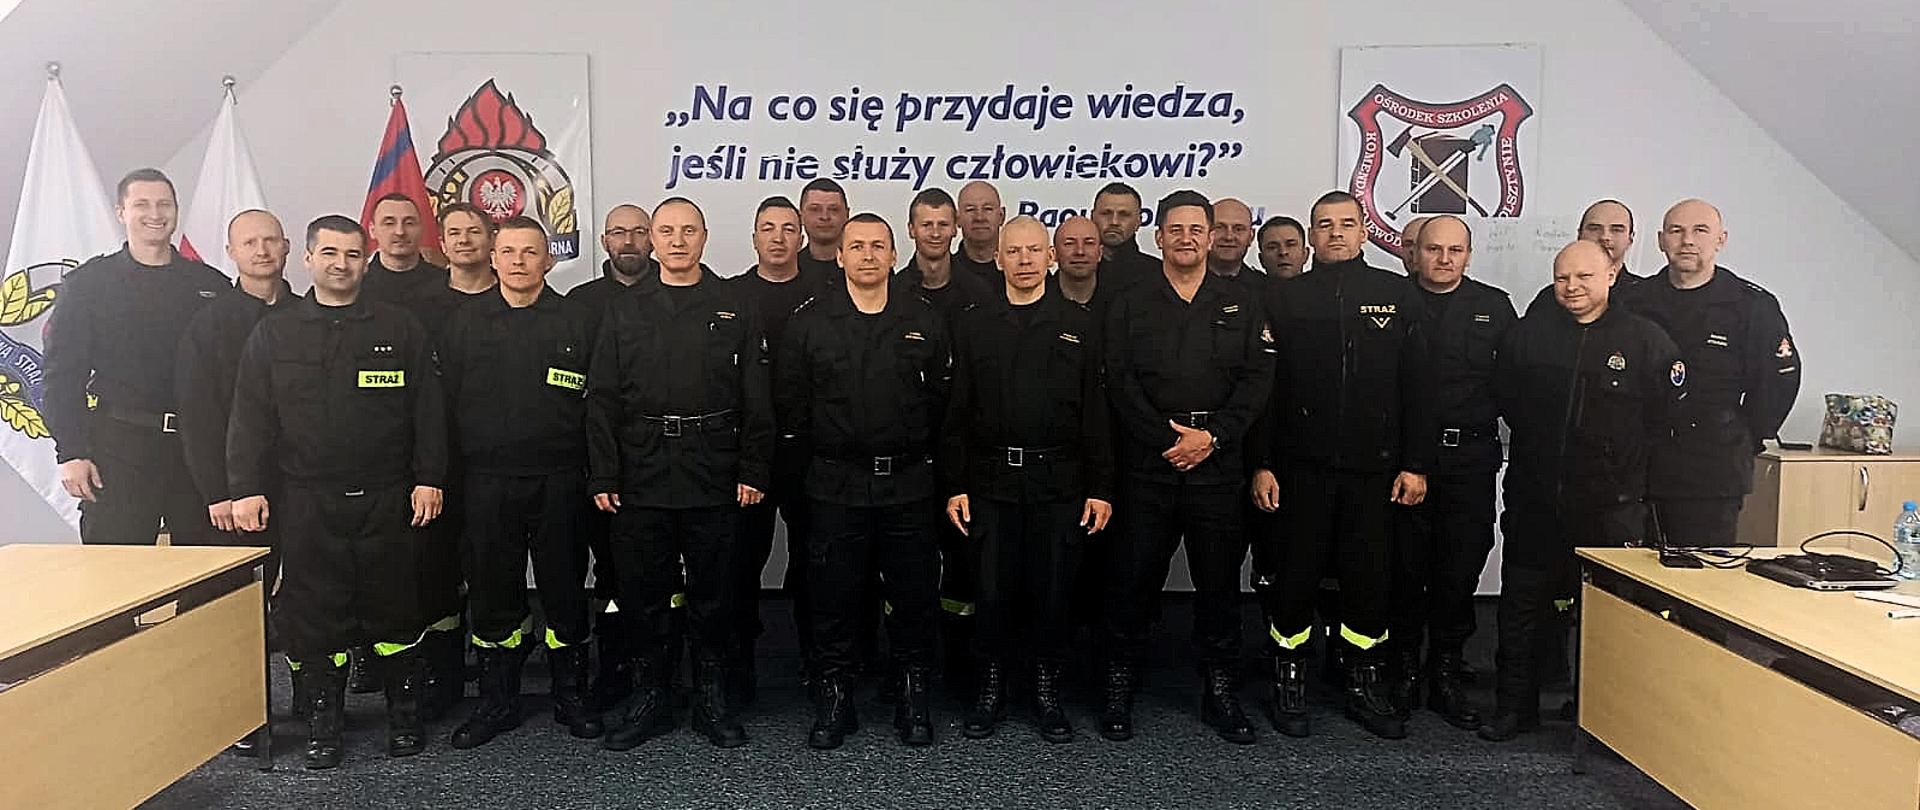 Grupa 28 strażaków - uczestników kursu nurkowego pozująca do zdjęcia grupowego. Za grupą strażaków na ścianie widoczny jest motto o treści: "Na co się przydaje wiedza jeśli nie służy człowiekowi" 